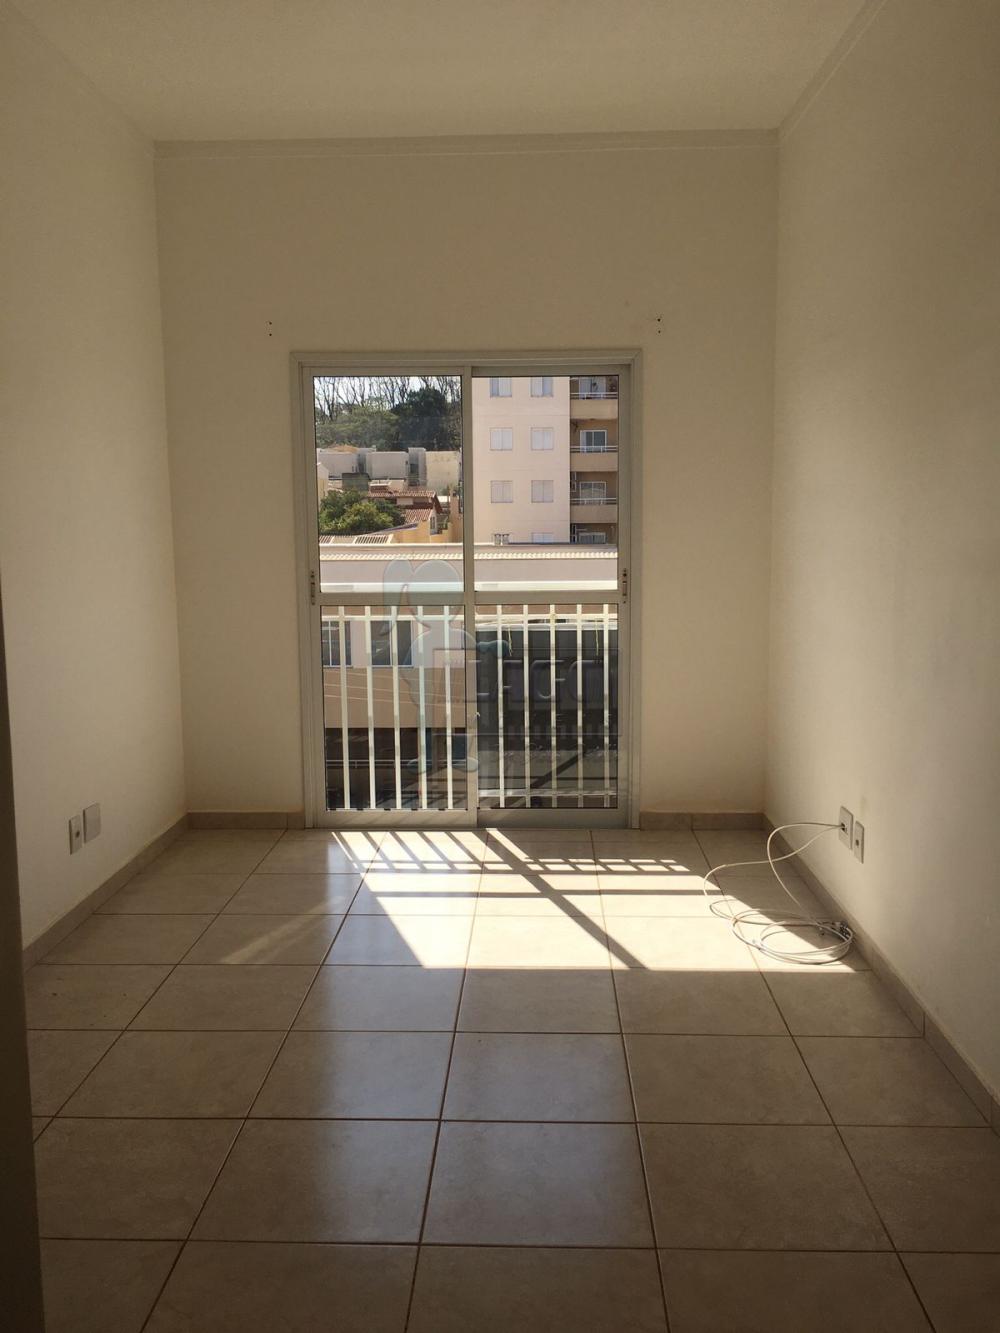 Comprar Apartamento / Padrão em Ribeirão Preto R$ 244.000,00 - Foto 2